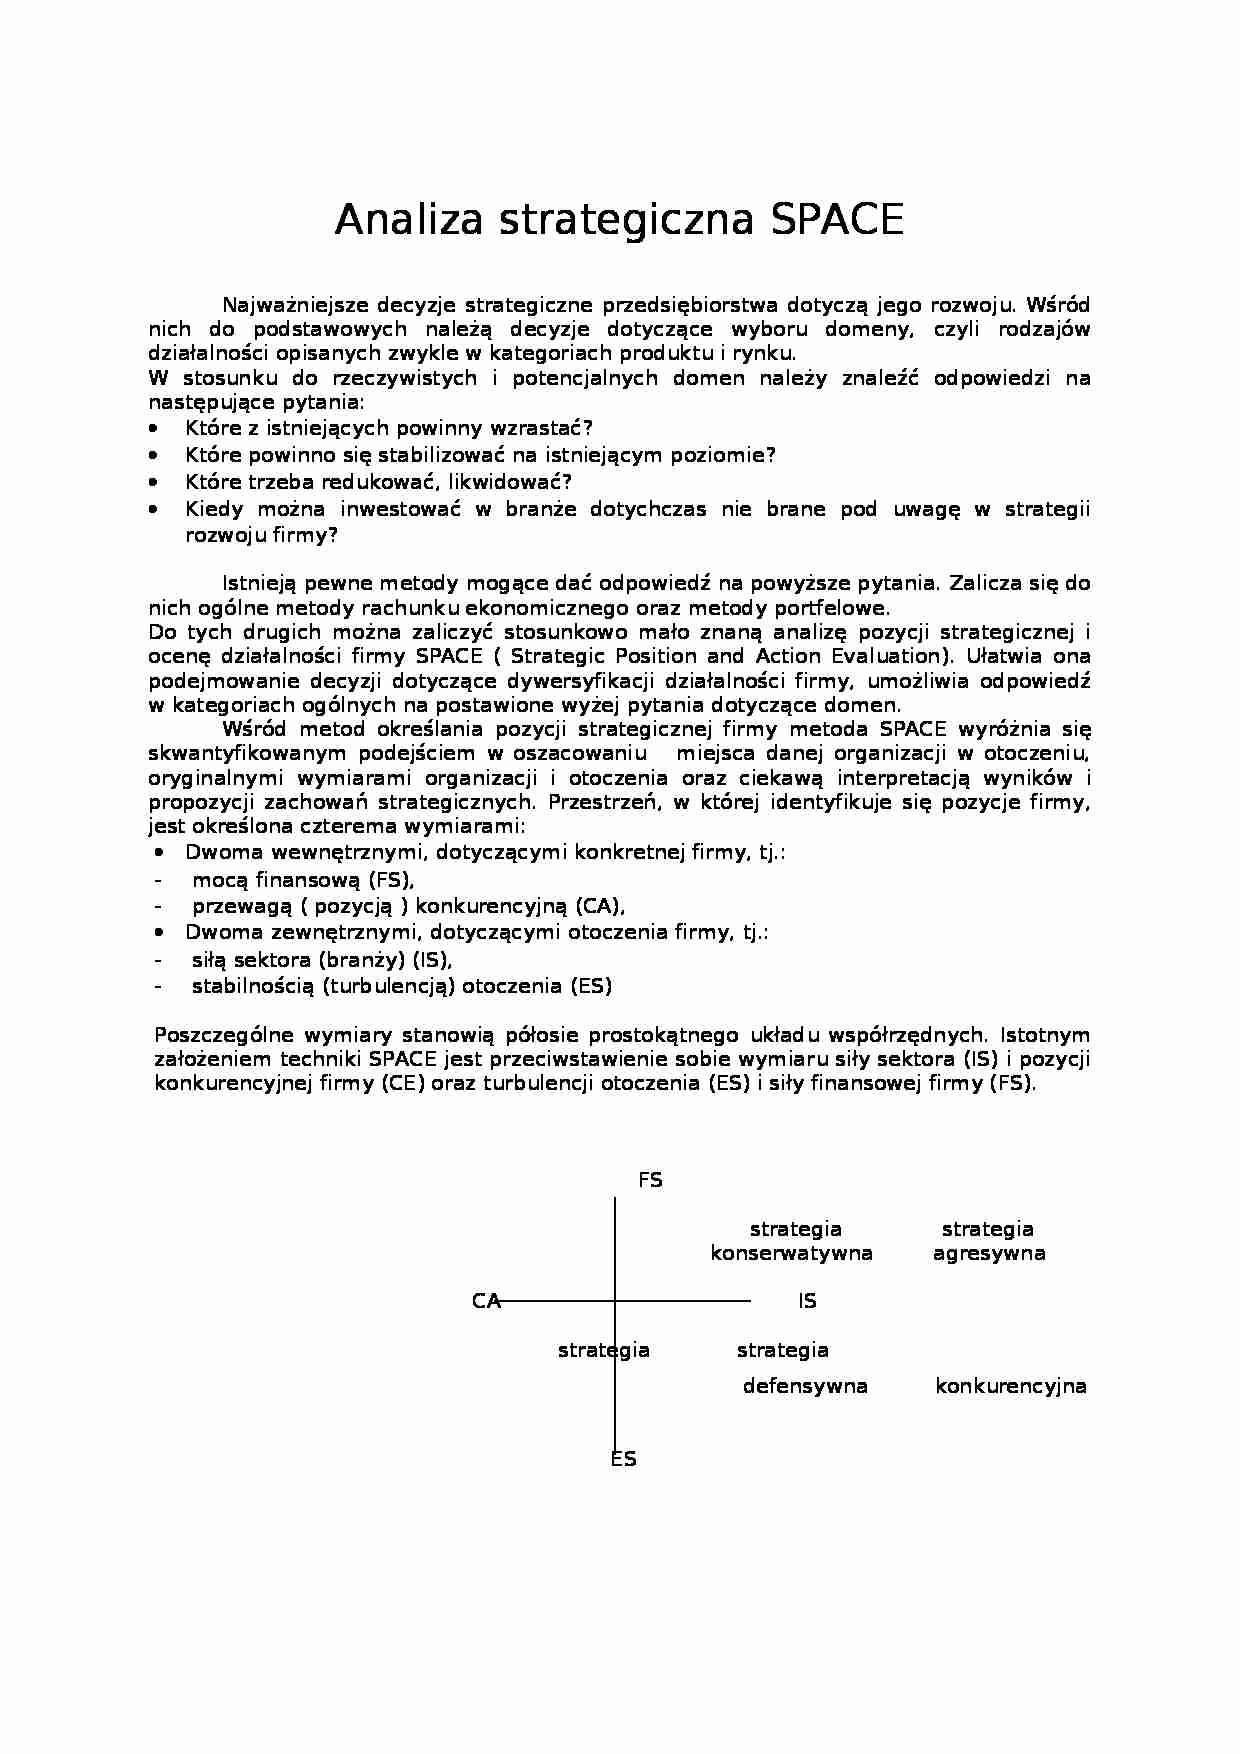 Analiza Space - zarządzanie - strona 1